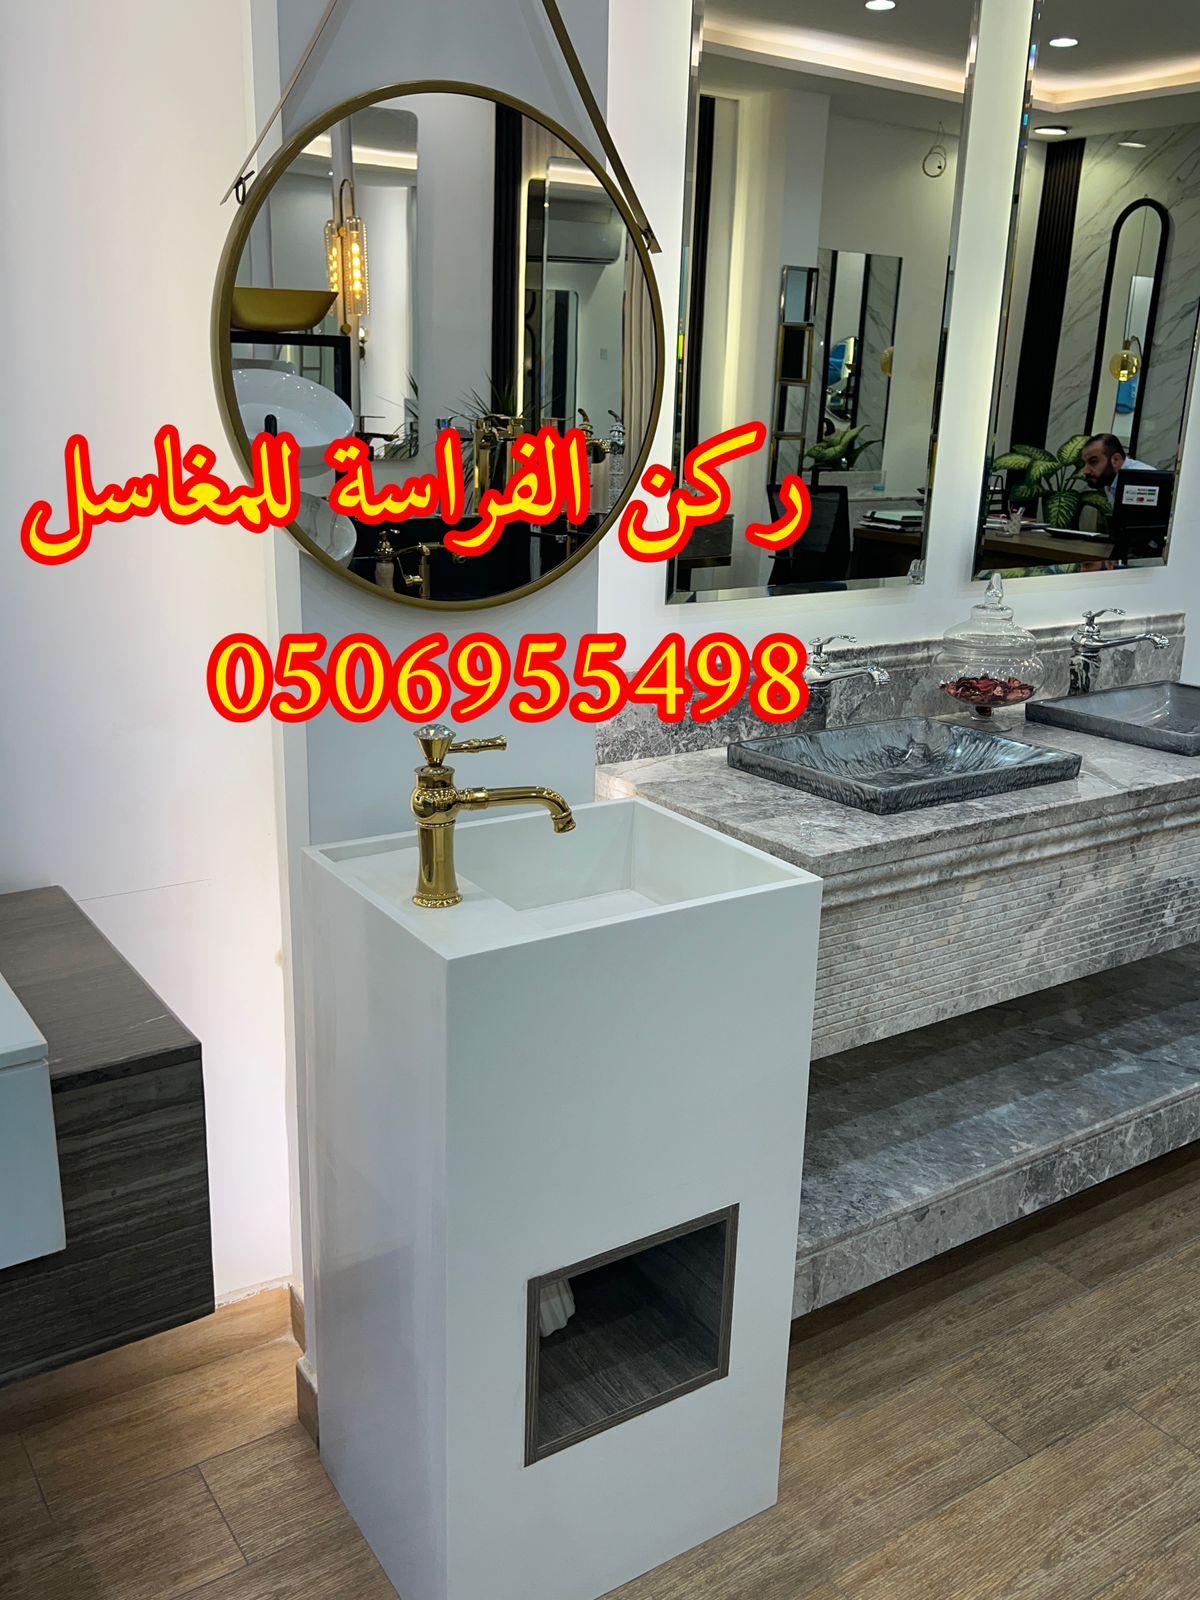 الرياض - تفصيل ديكورات مغاسل حمامات رخام في الرياض,0506955498 428136606